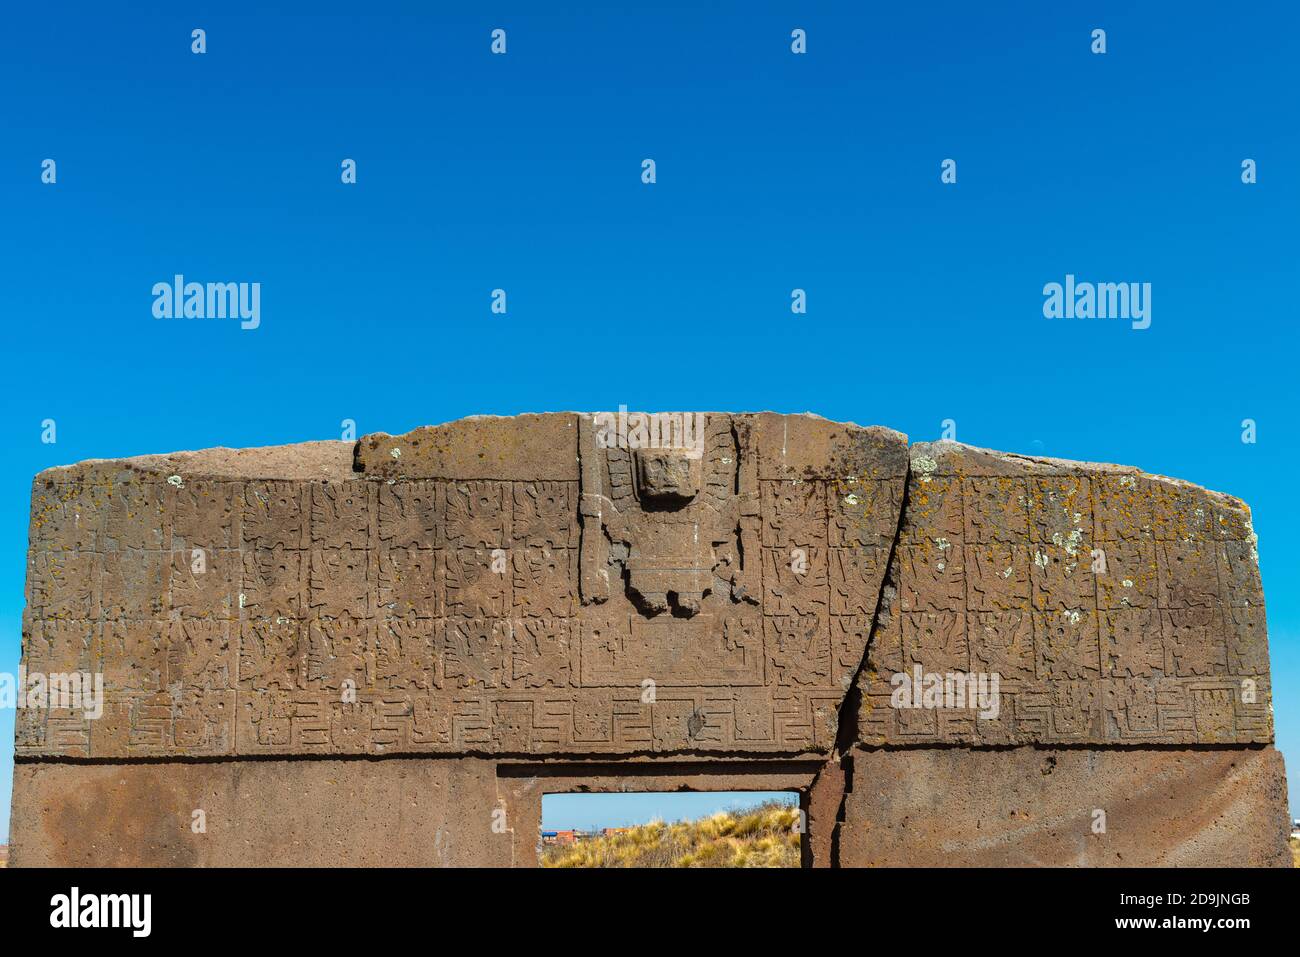 Puerta del sol, Kalasaya, archäologische Stätte Tiwanaku oder Tiahuanaco, UNESCO-Weltkulturerbe, Altiplano, La Paz, Bolivien, Lateinamerika Stockfoto